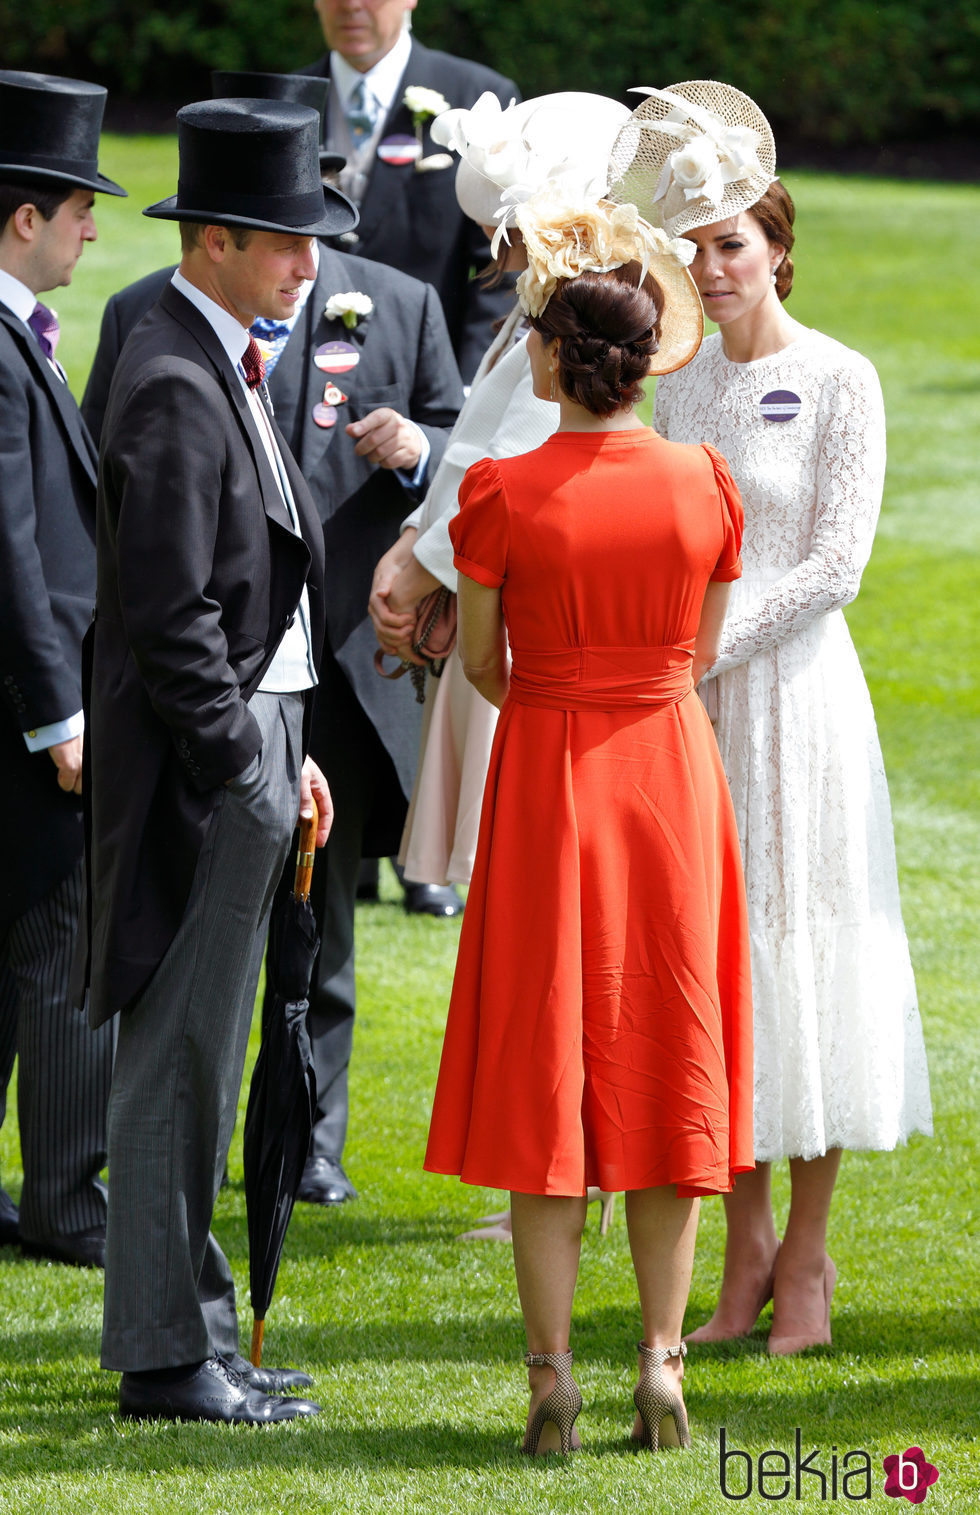 Los Duques de Cambridge y Mary de Dinamarca en Ascot 2016